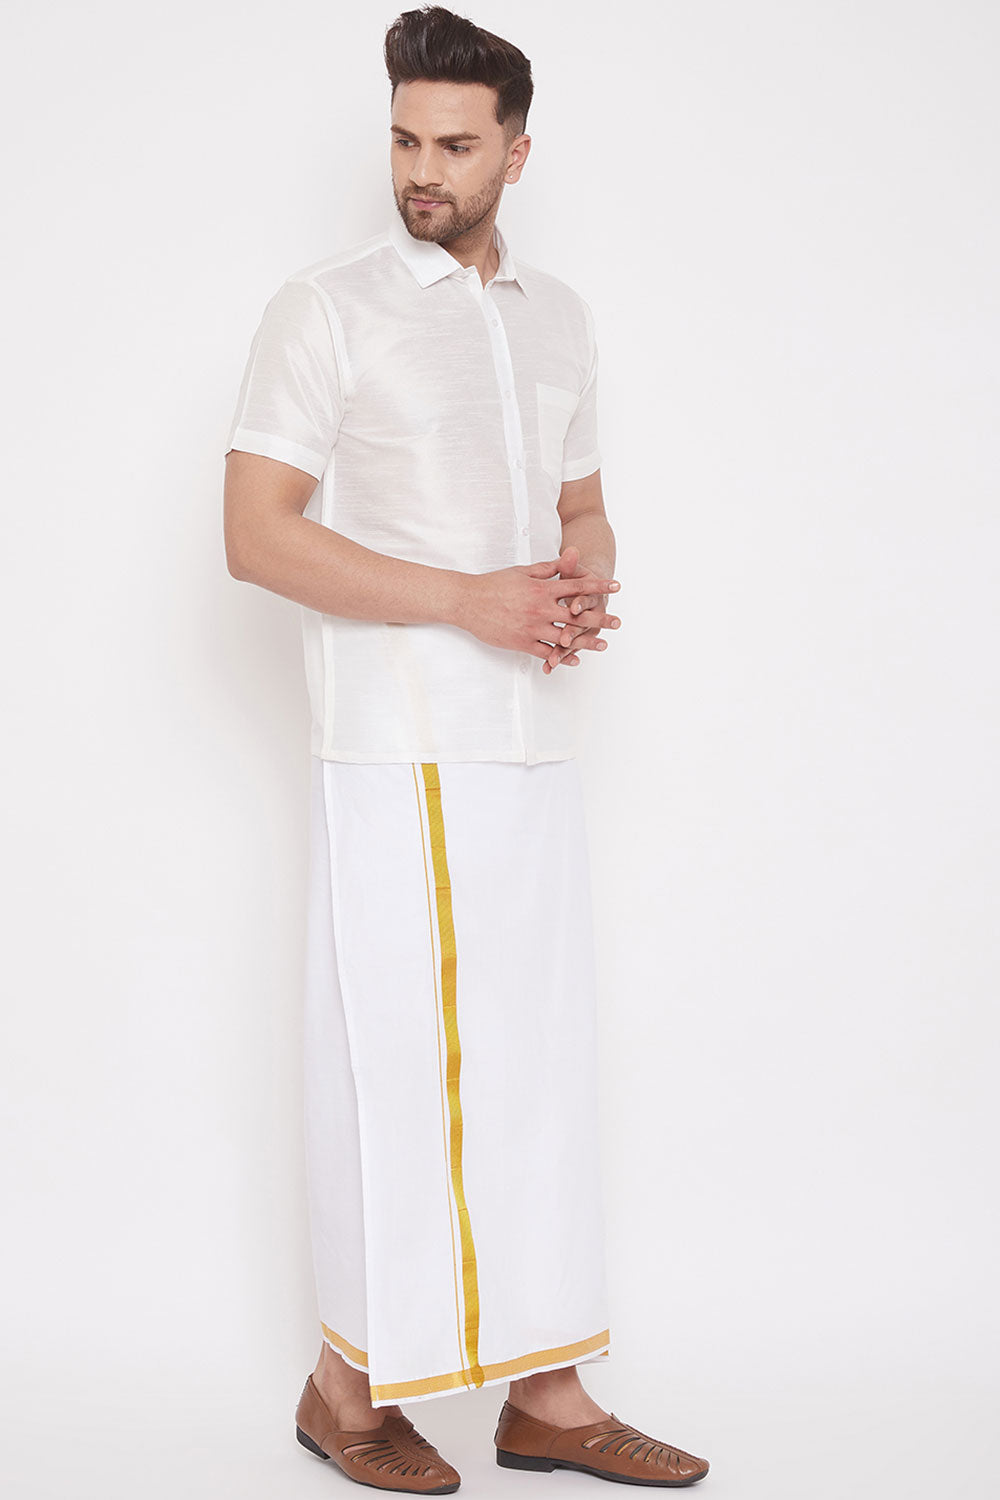 Art Silk Solid White Shirt and Mundu